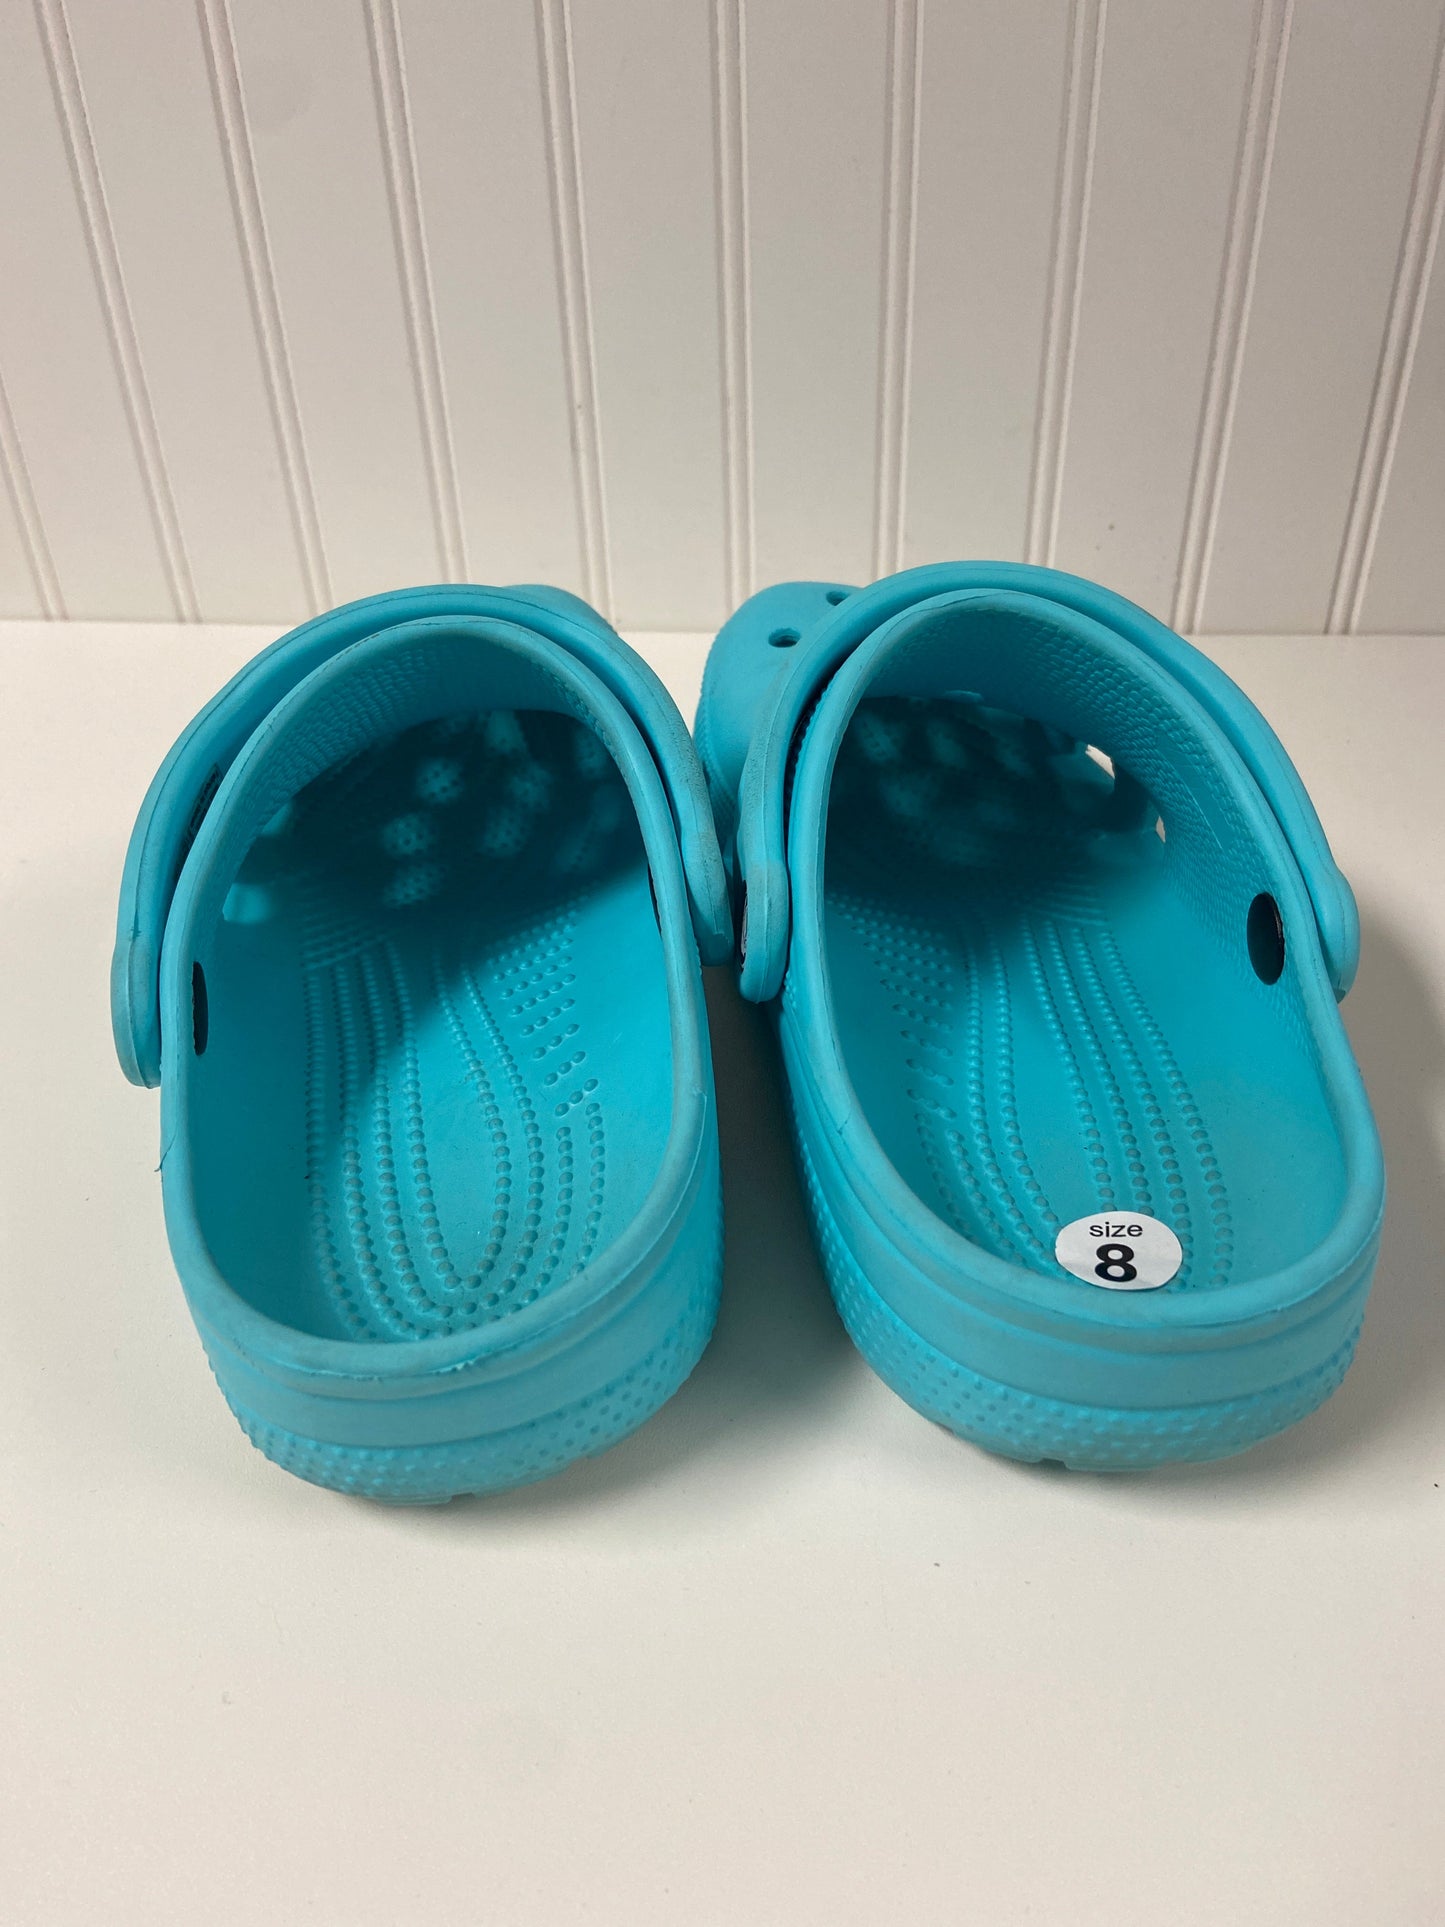 Aqua Shoes Flats Crocs, Size 8